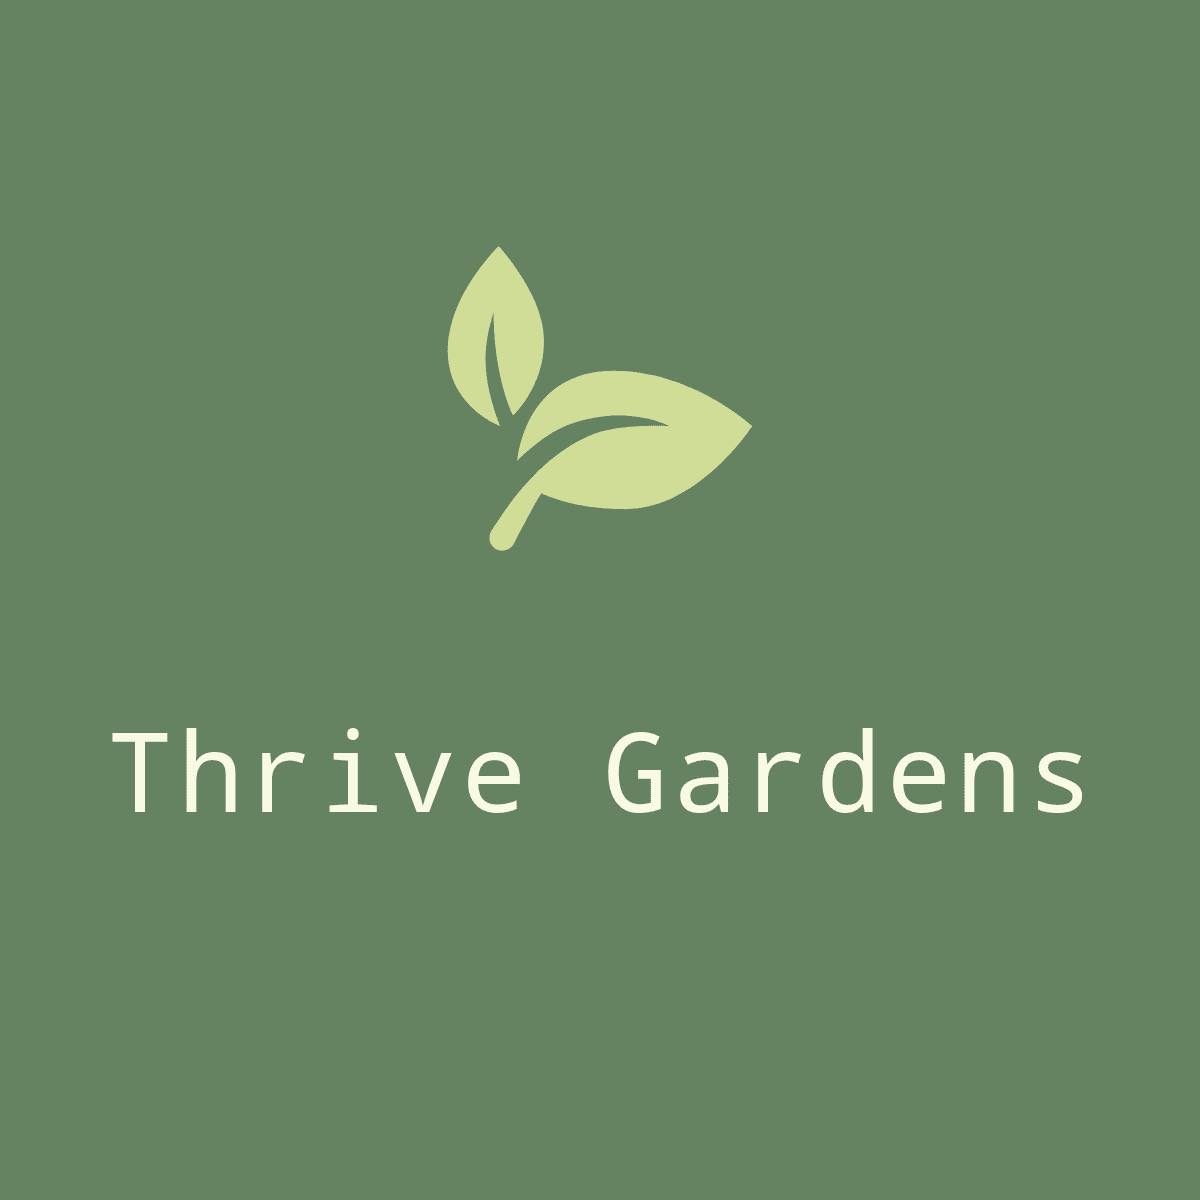 Thrive gardens